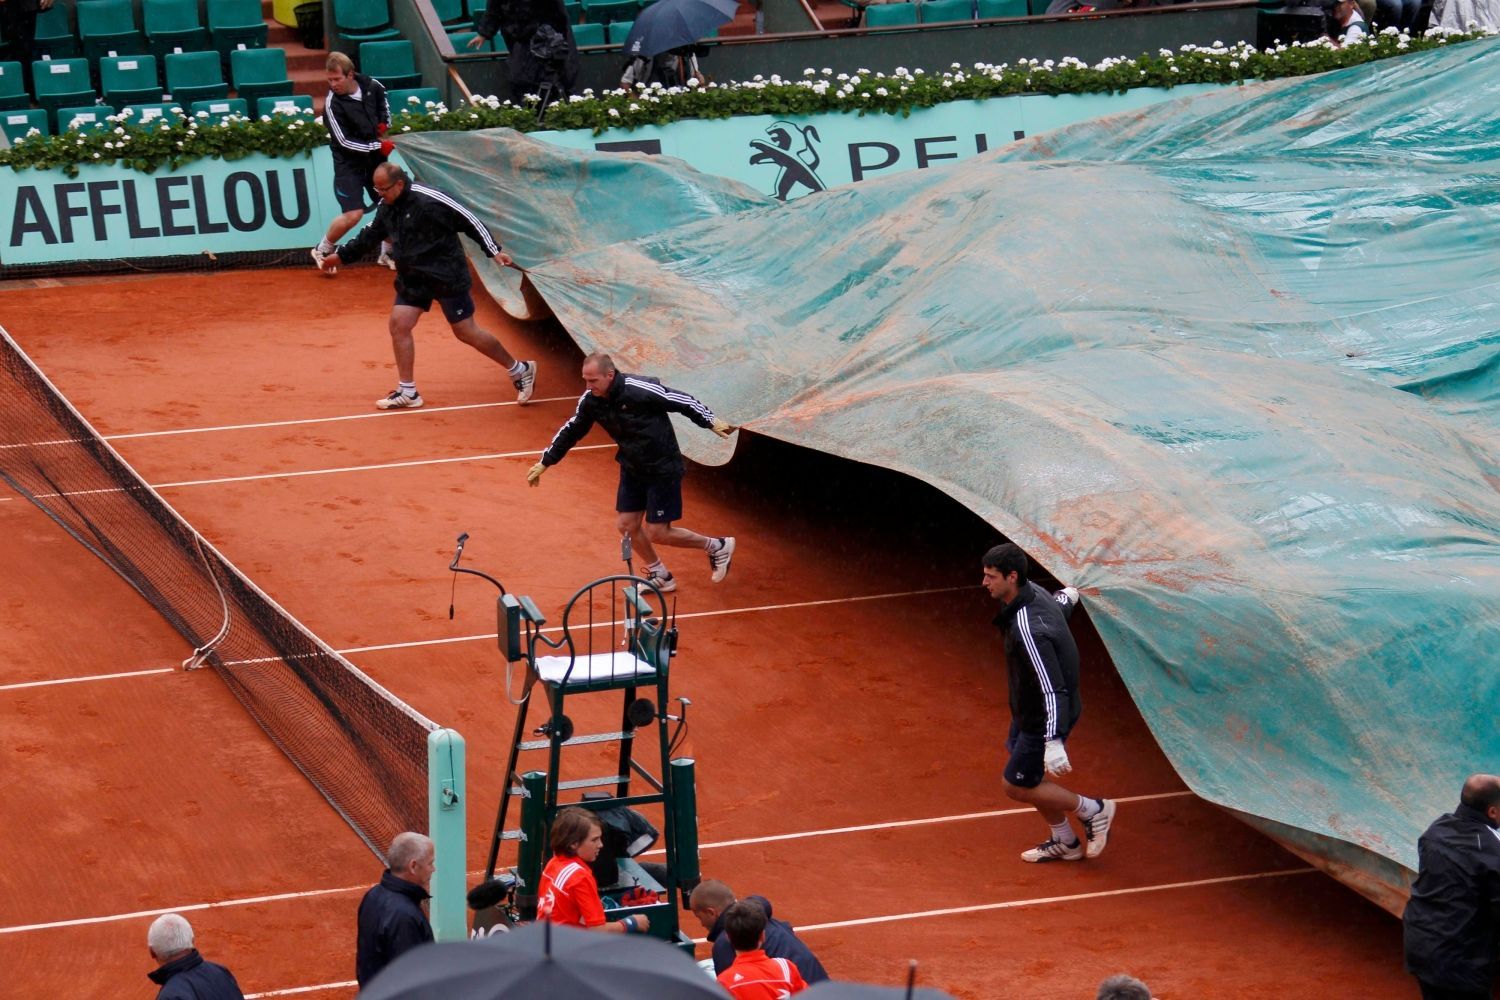 Zatahování kurtu po přerušení utkání mezi Rafalem Nadalem a Davidem Ferrerem v semifinále French Open 2012